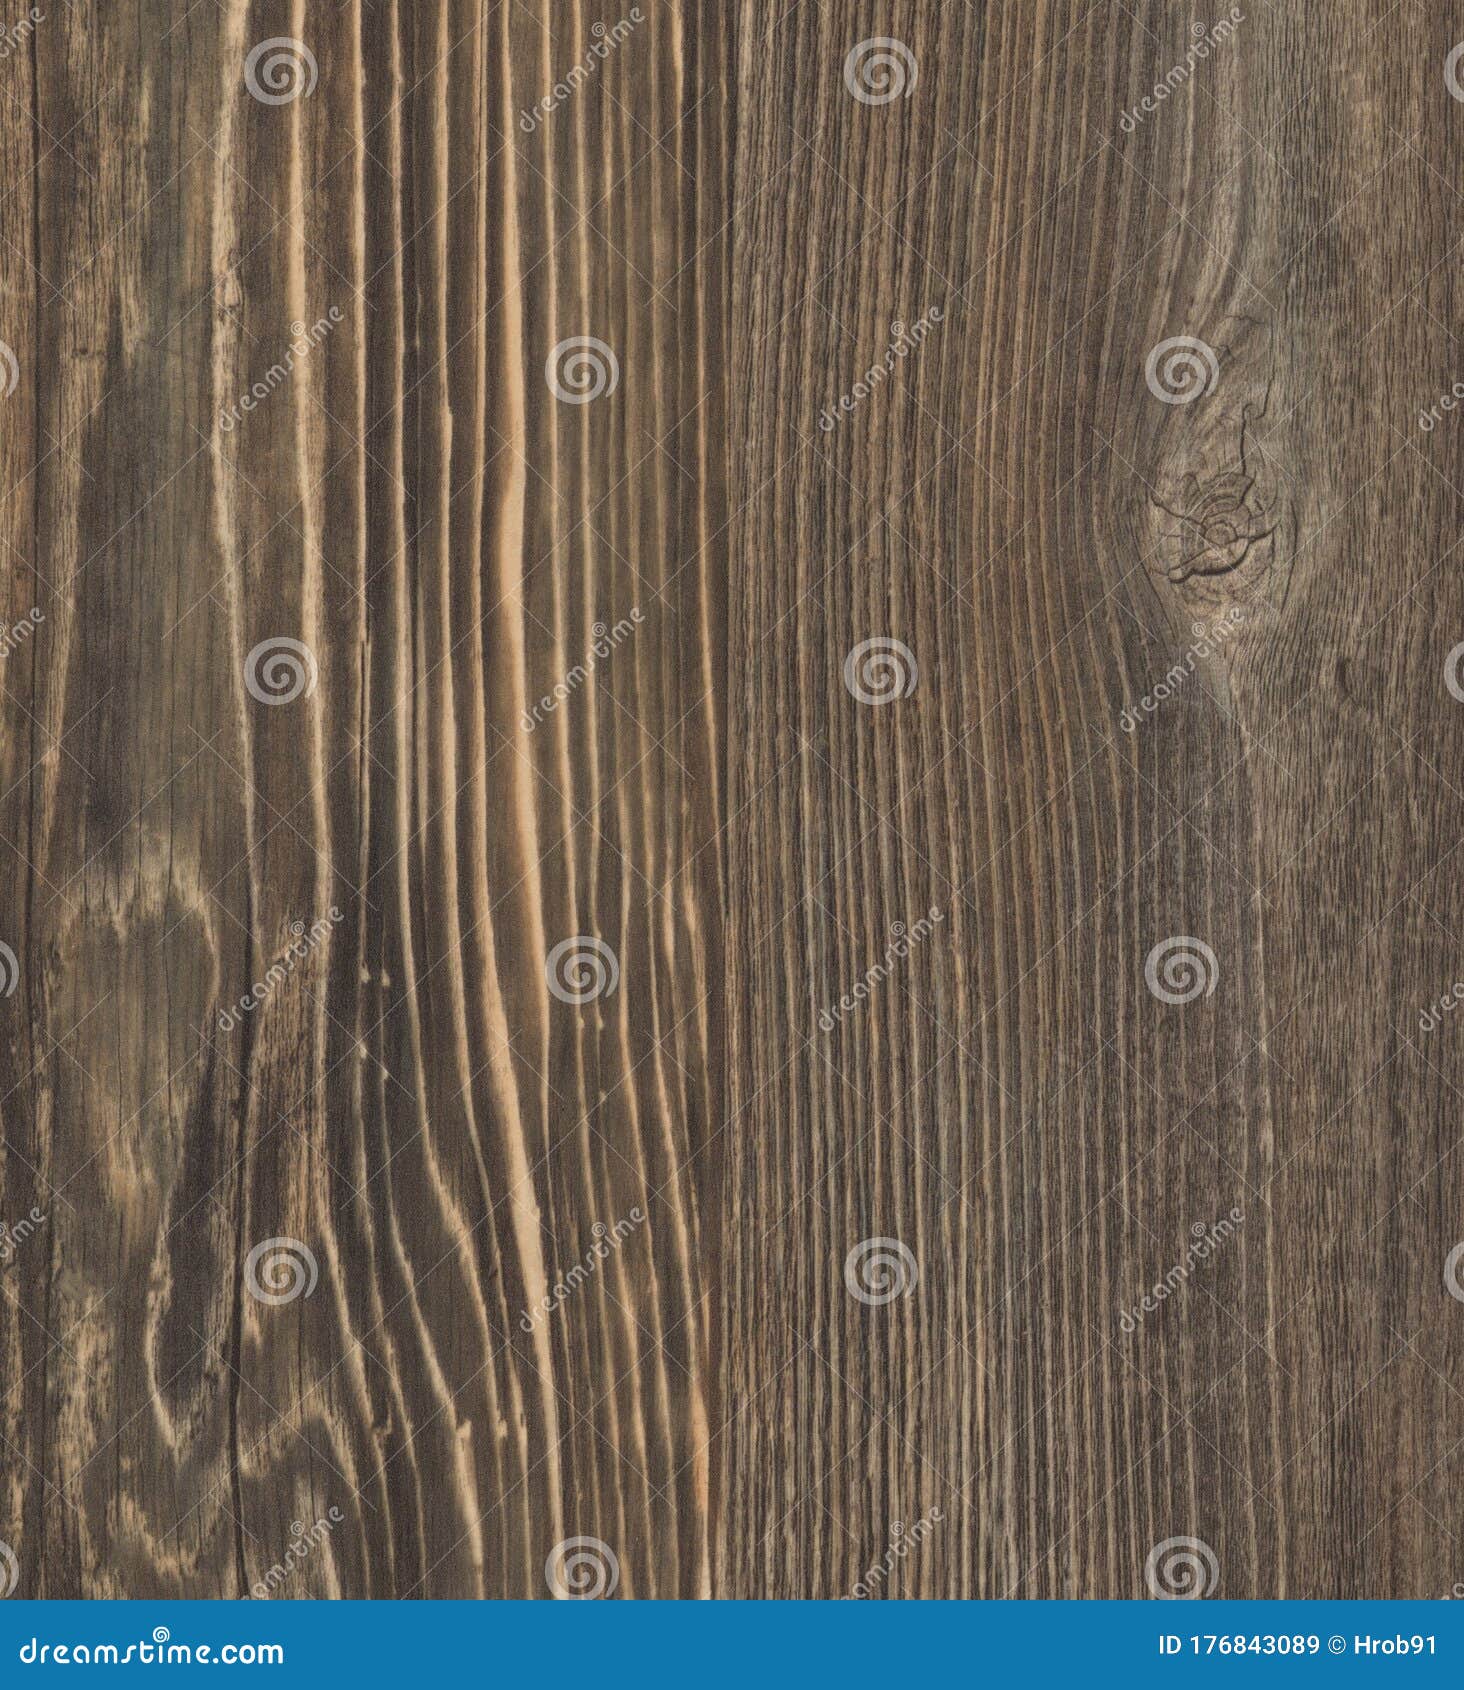 wallboard grey wood panel texture